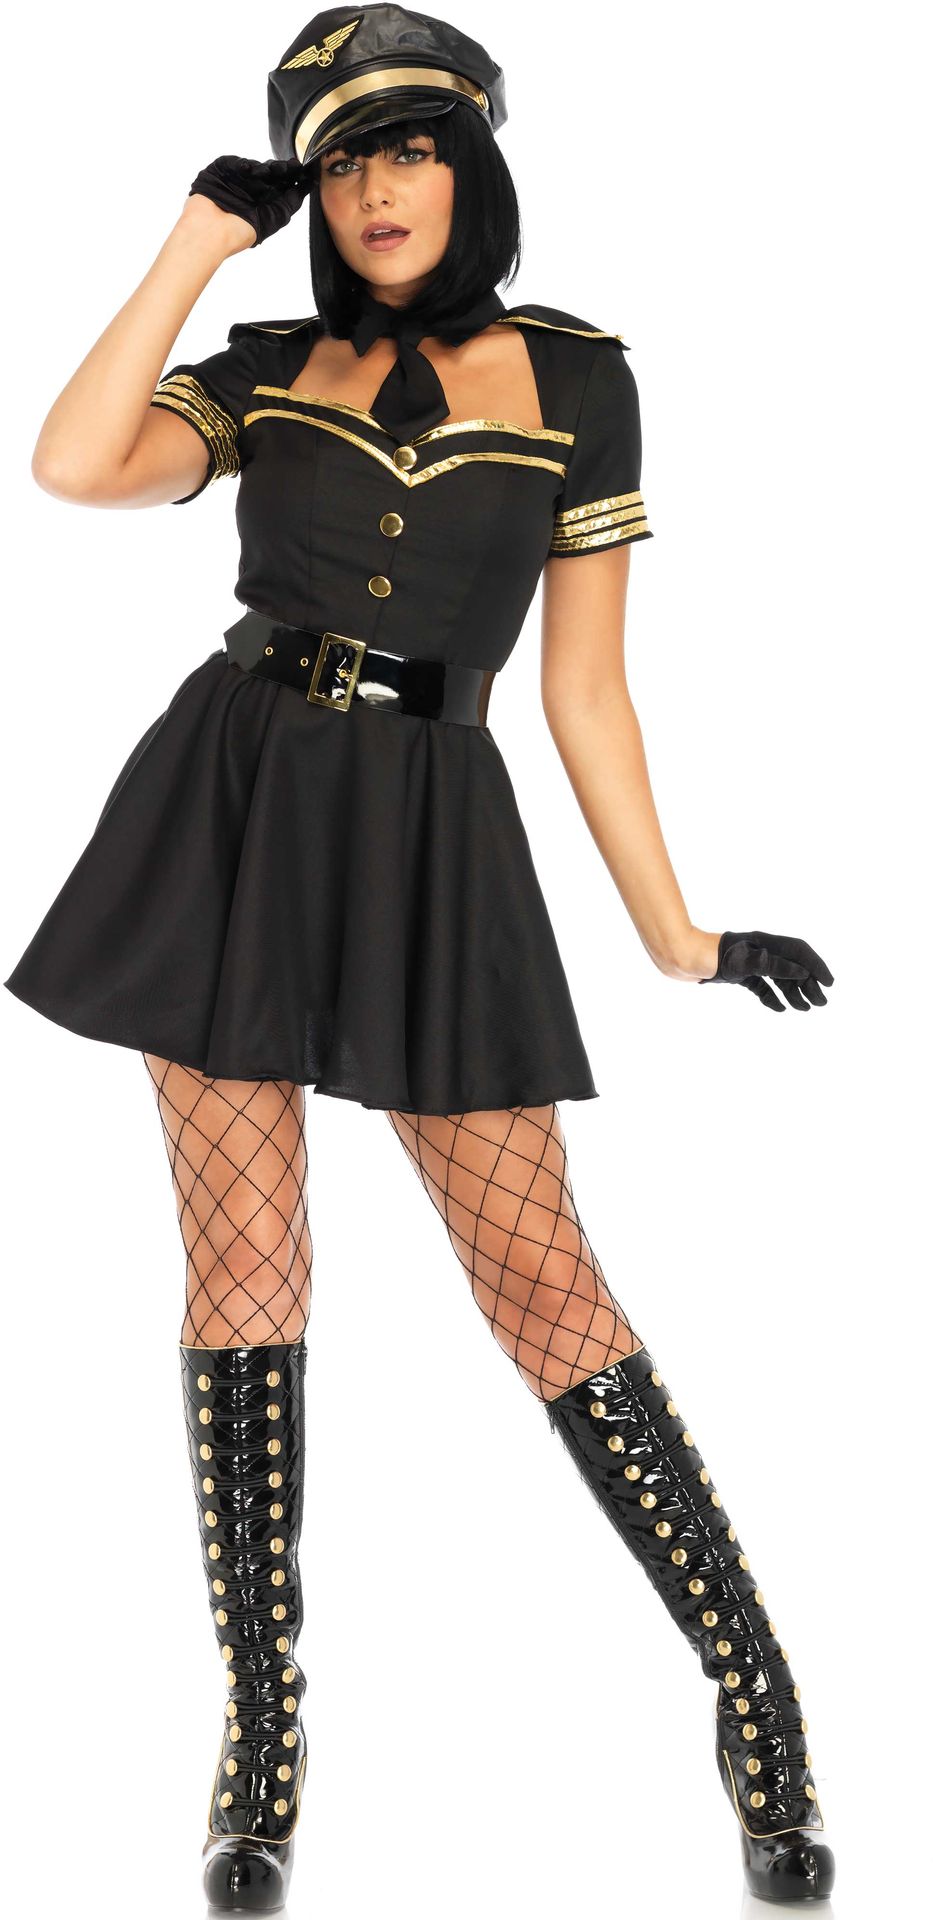 Stewardess uniform